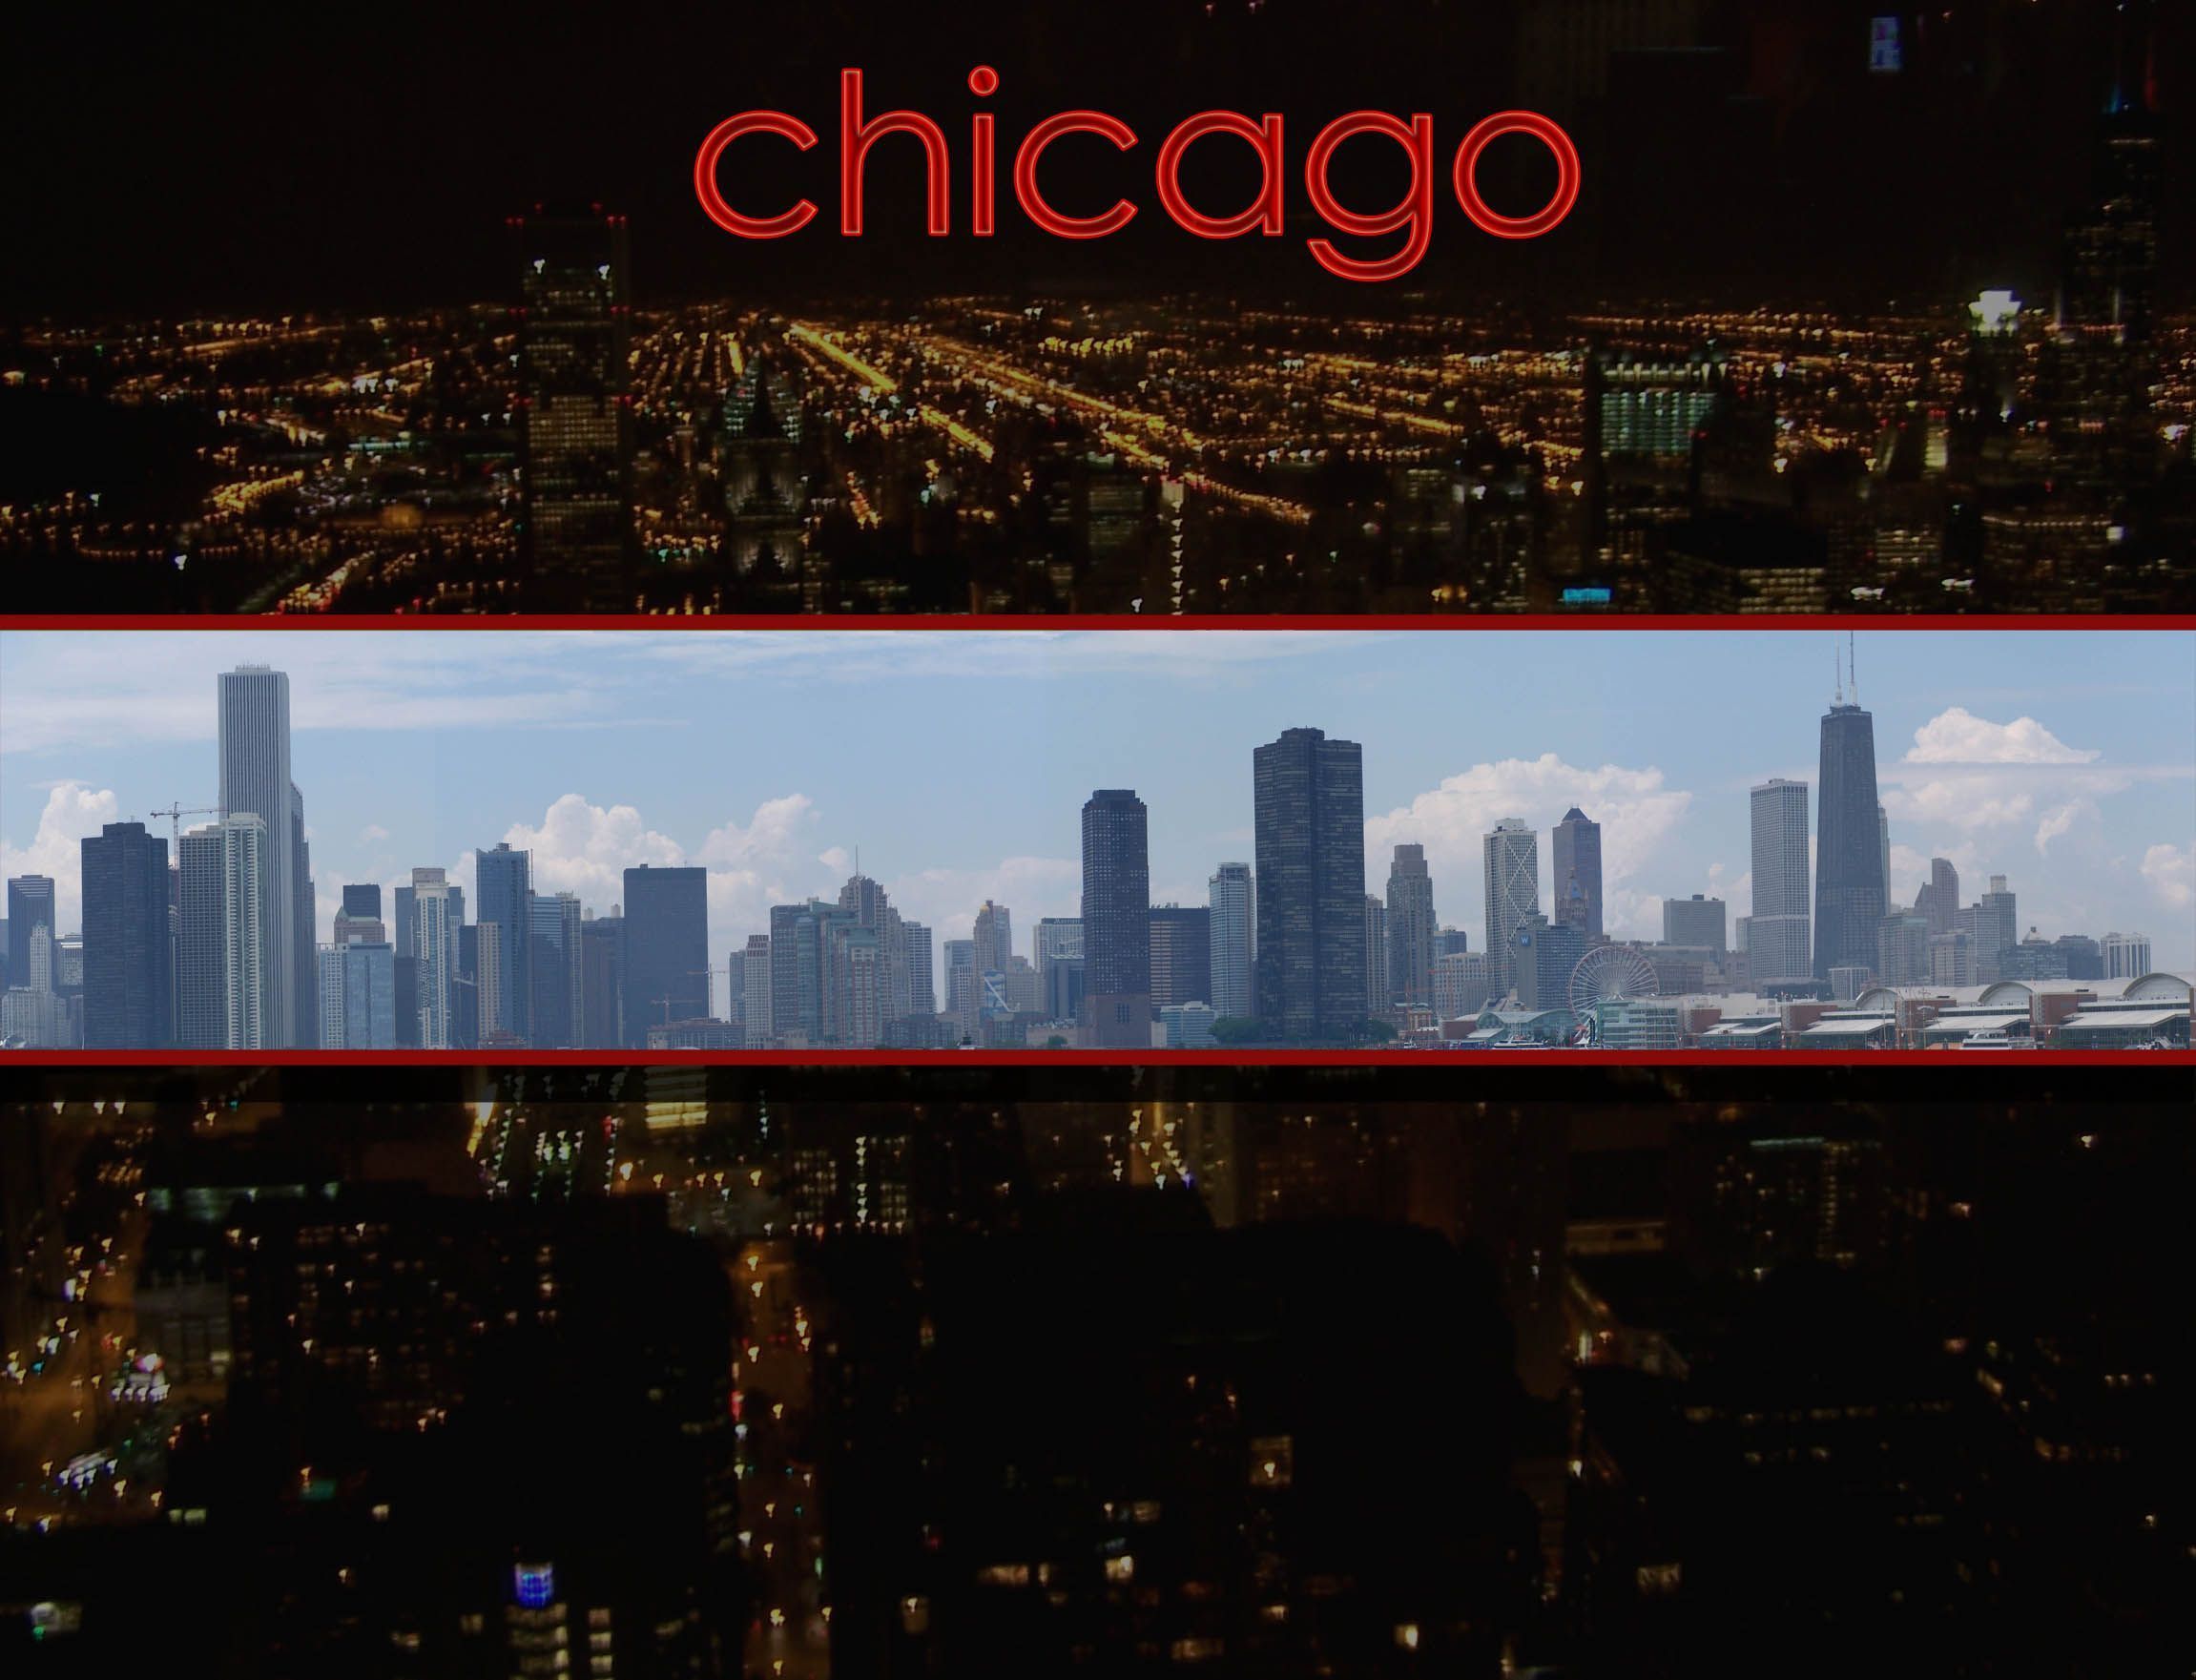 Windows wallpaper, Chicago skyline